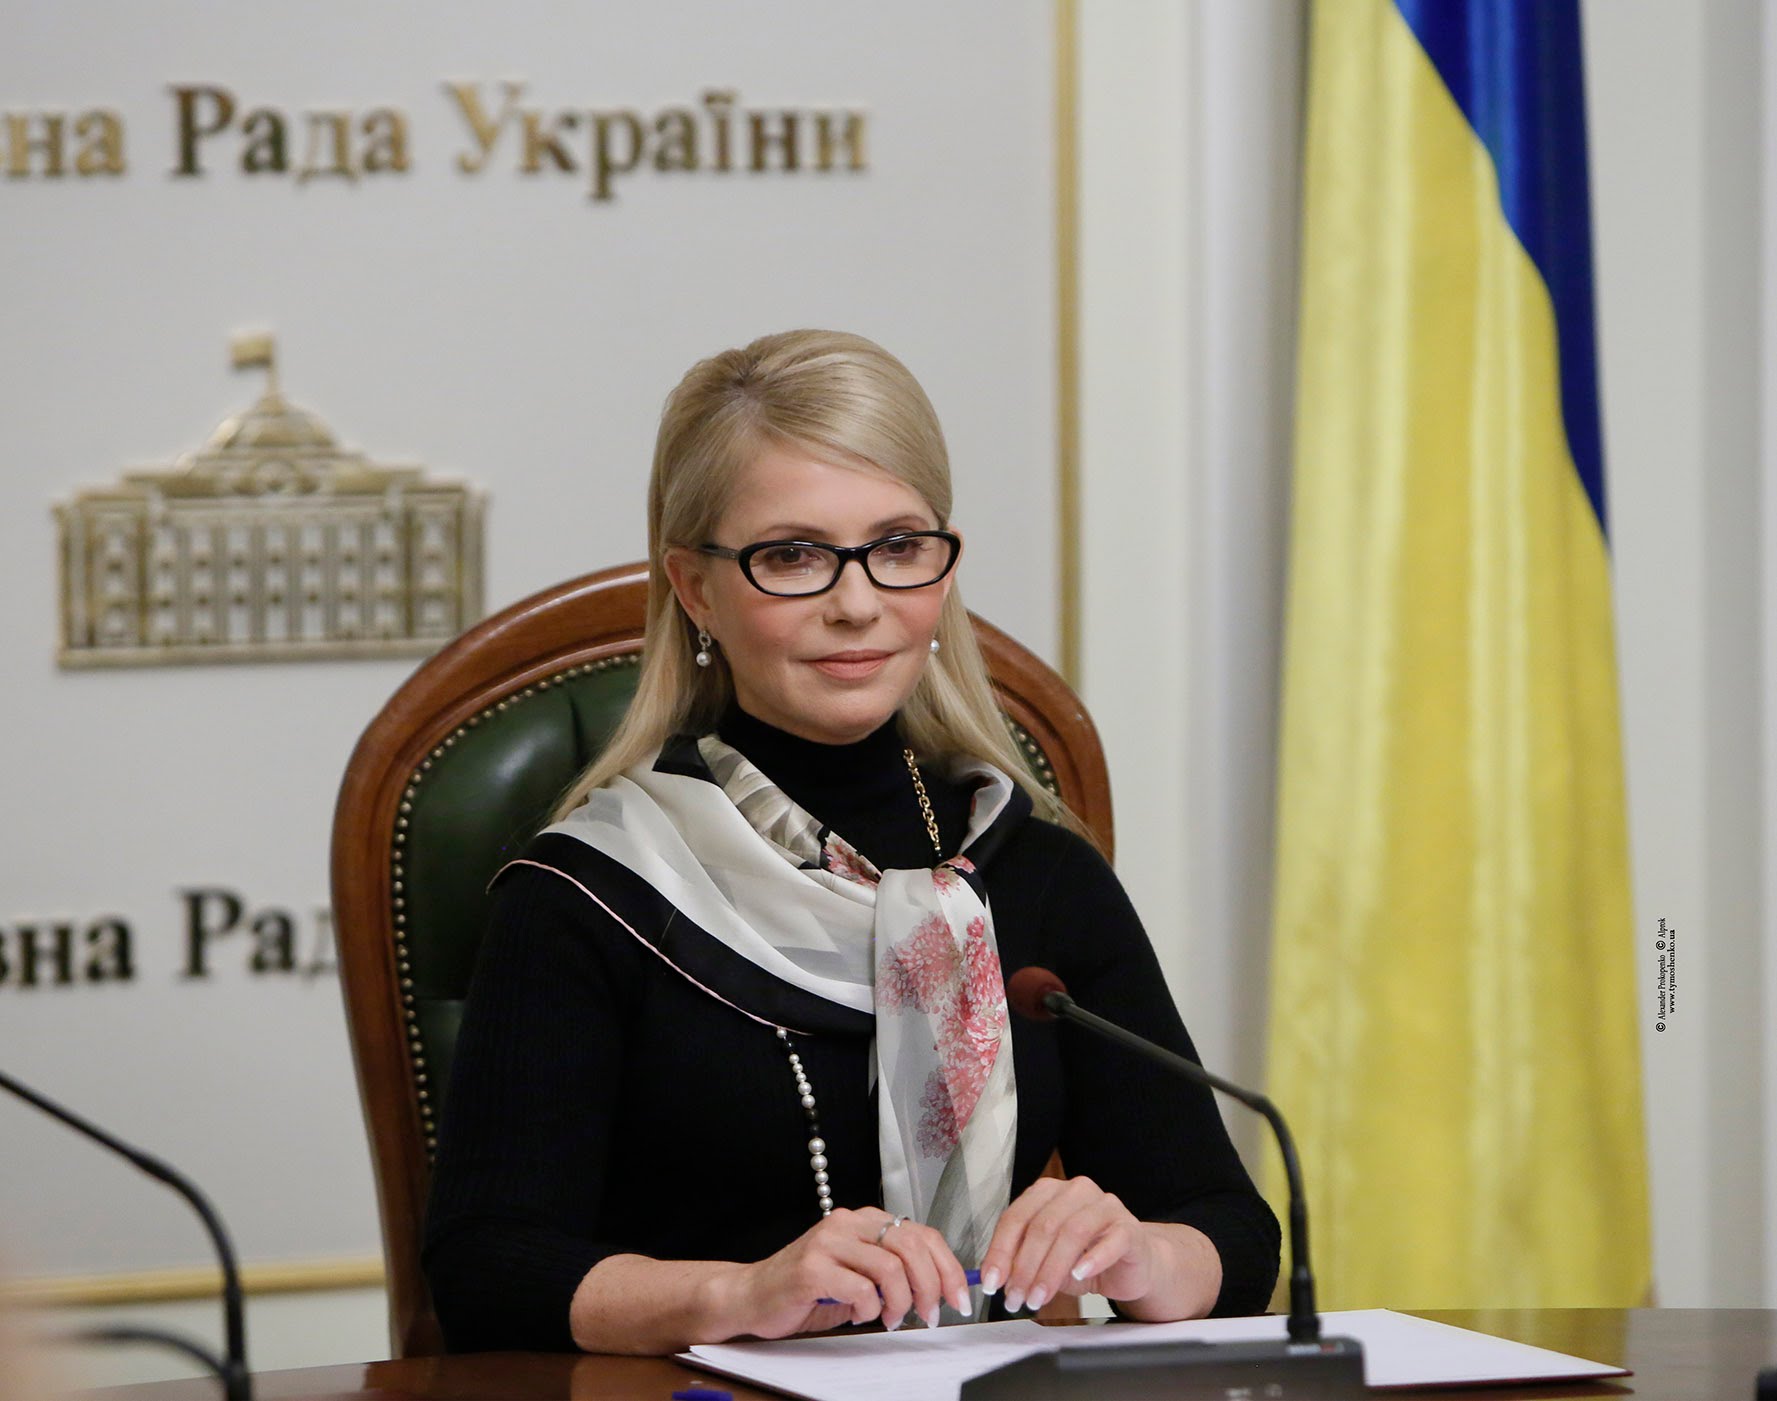 Тимошенко прогуляла заседание Верховной Рады на крестинах